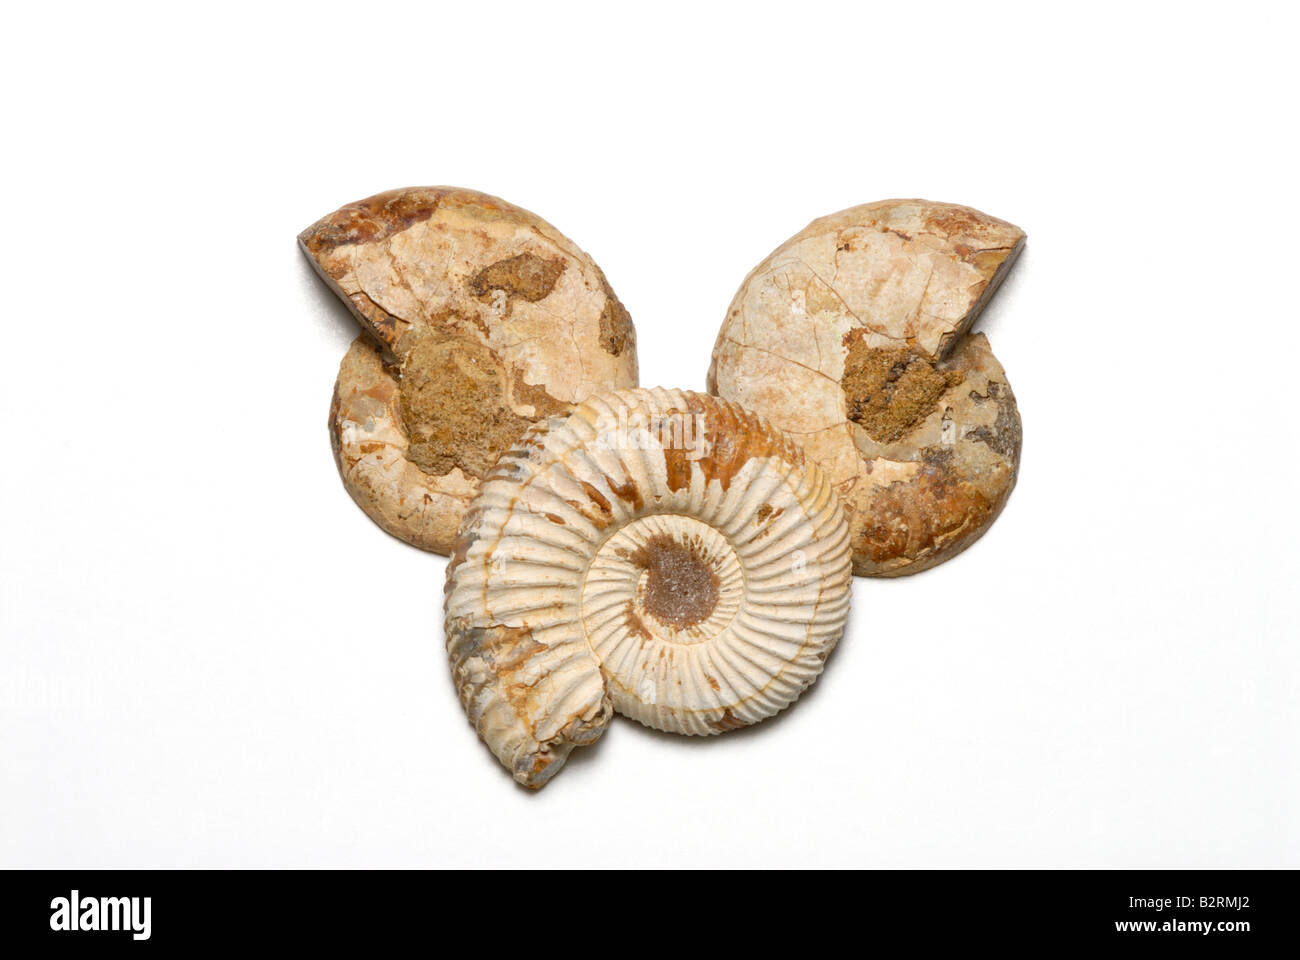 Vue extérieure de fossiles d'ammonites de Madagascar Jurassique Banque D'Images